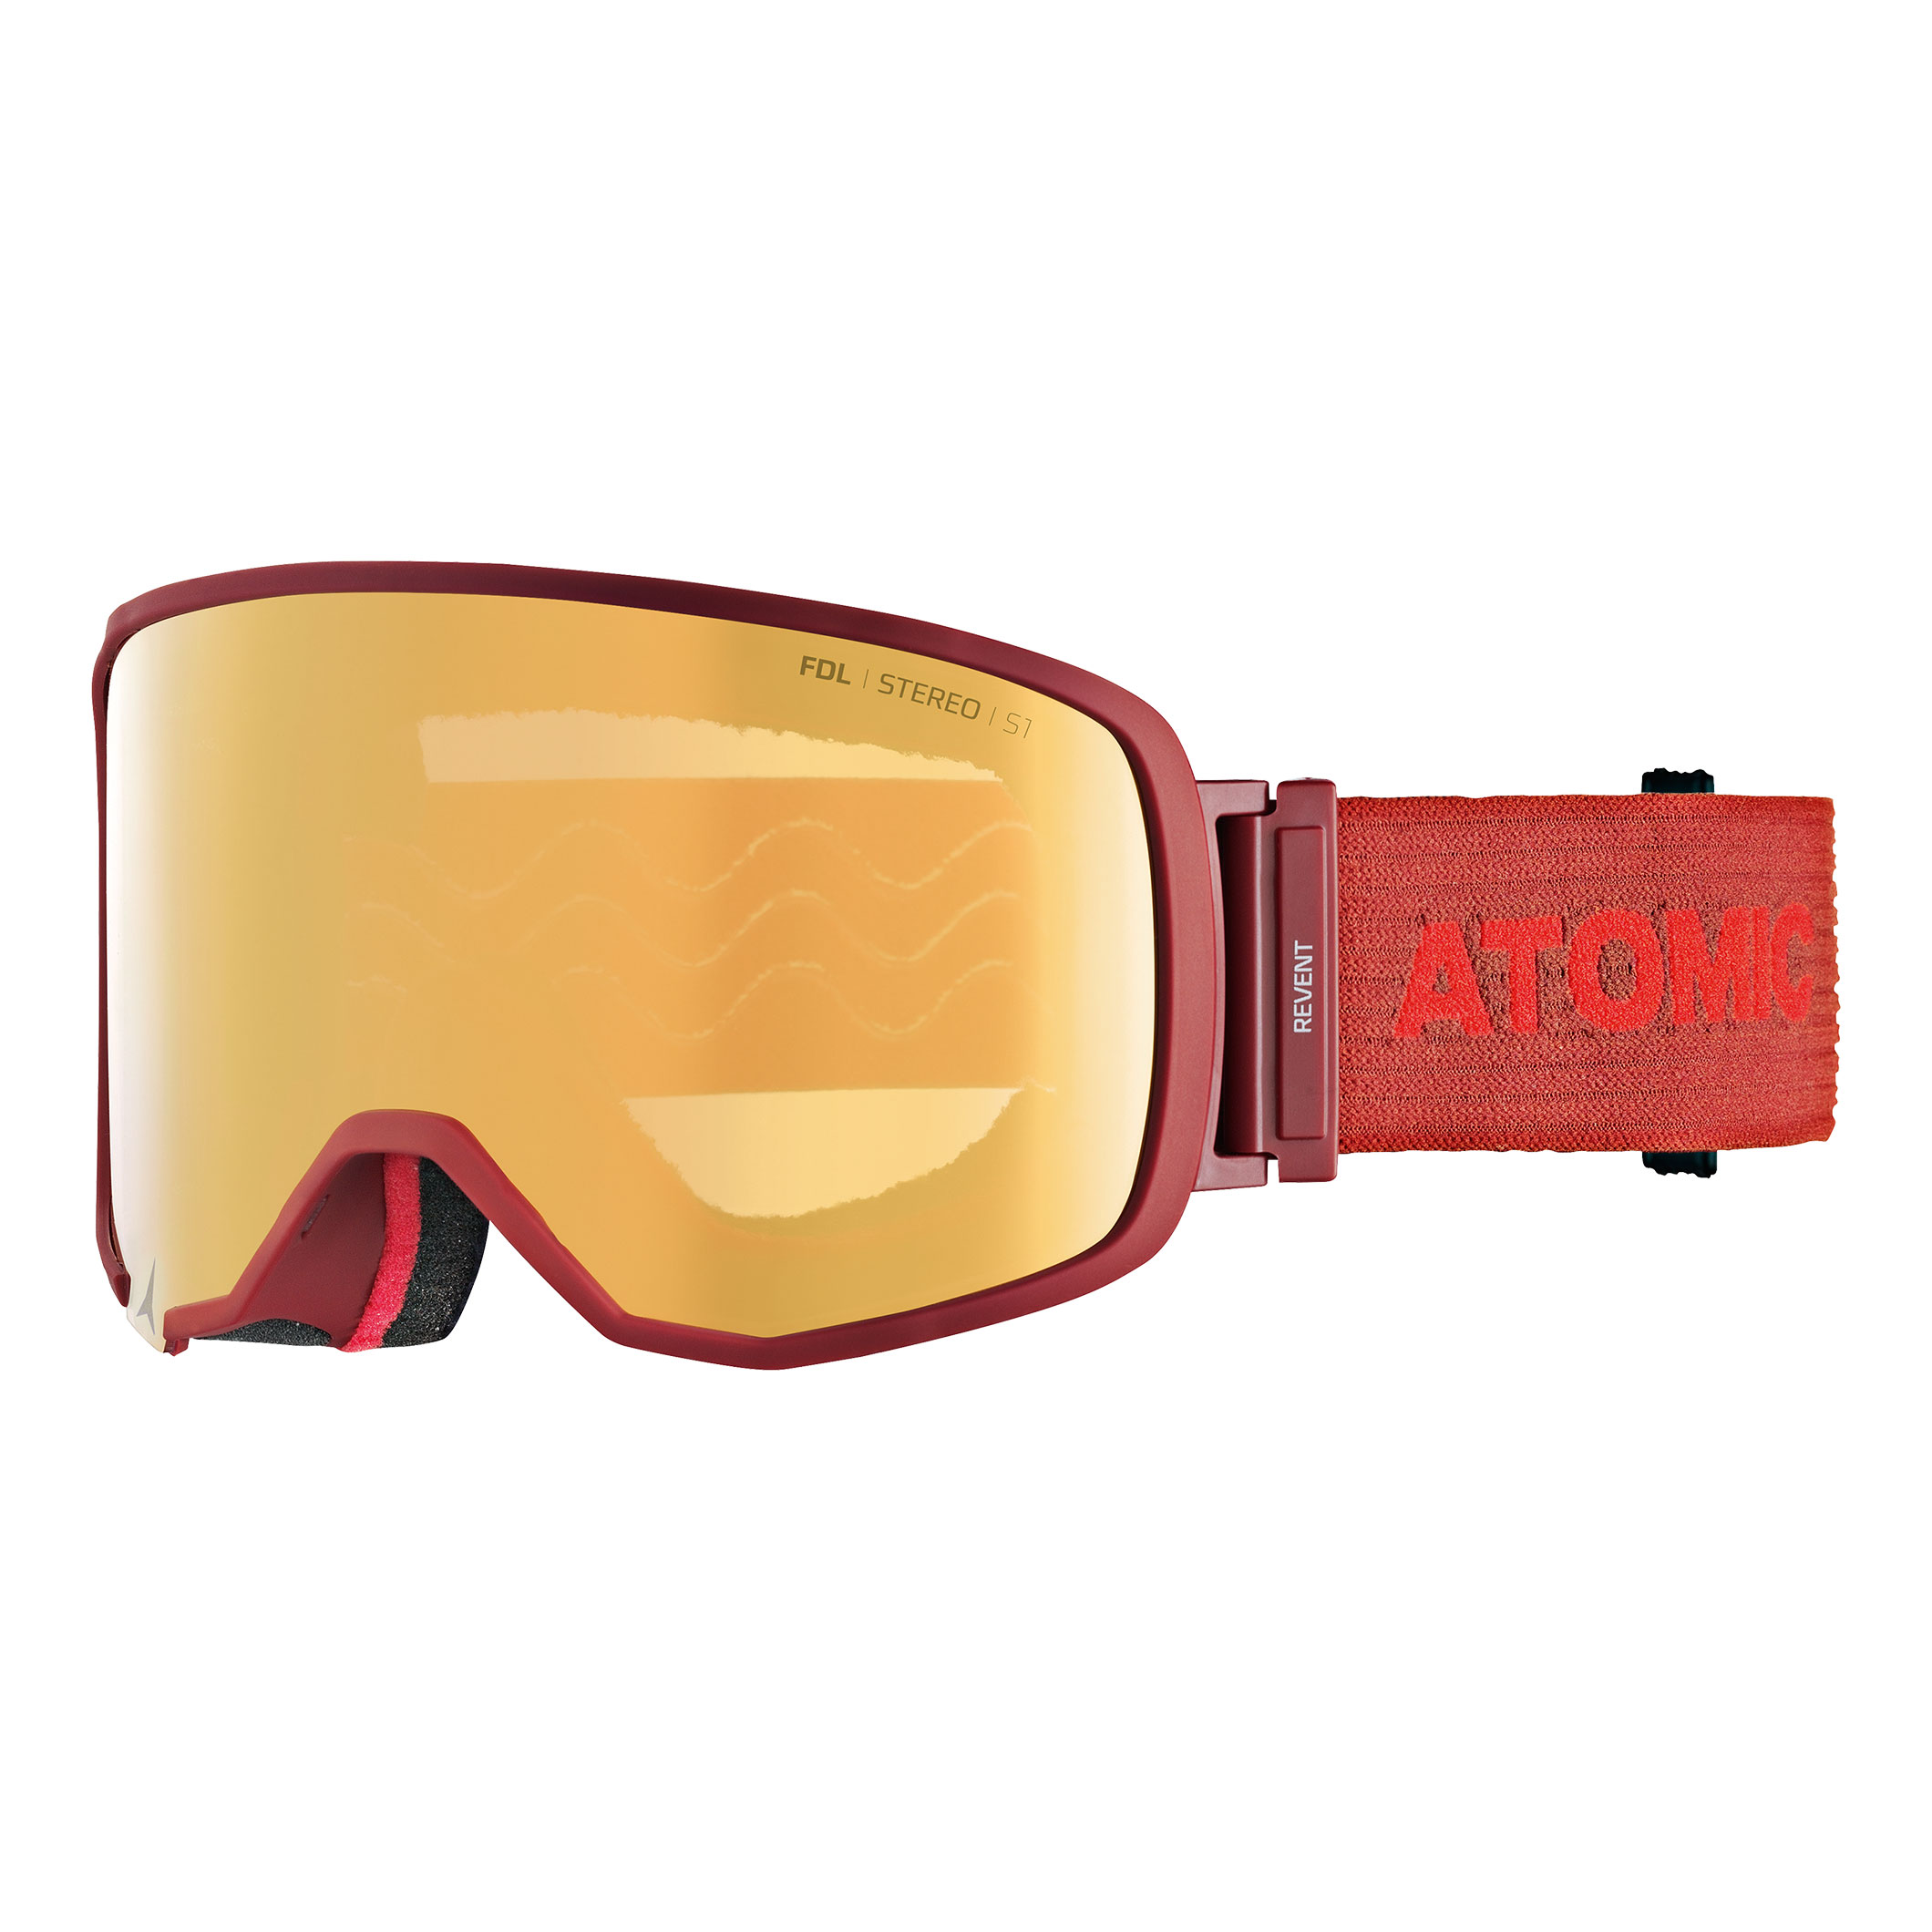  Snowboard Goggles	 -  atomic REVENT L FDL STEREO OTG